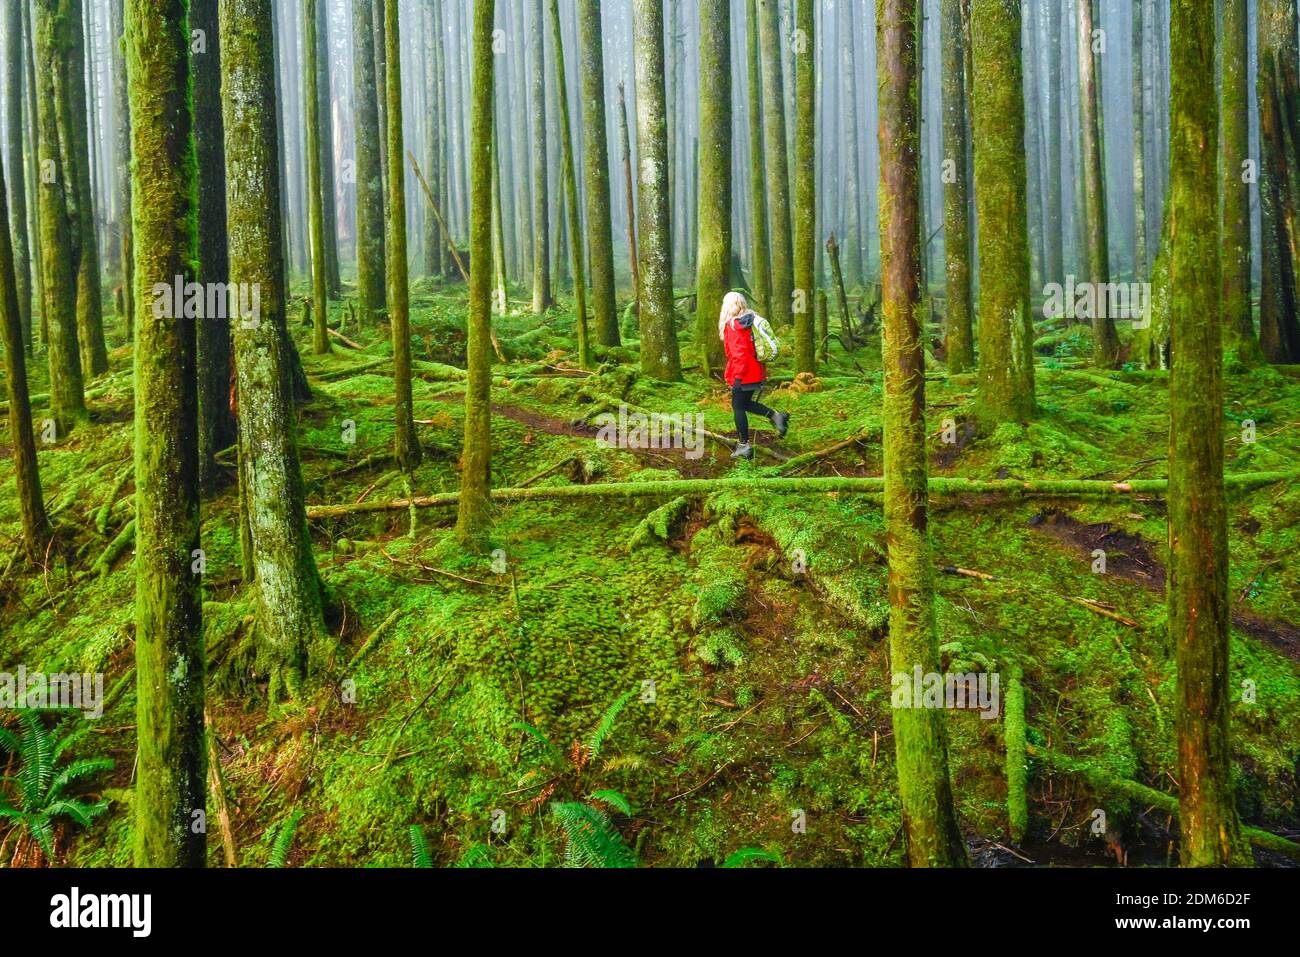 Frau beim Wandern durch nebligen Wald mit 2. Wachstum, Golden Ears Provincial Park, Maple Ridge, British Columbia, Kanada Stockfoto